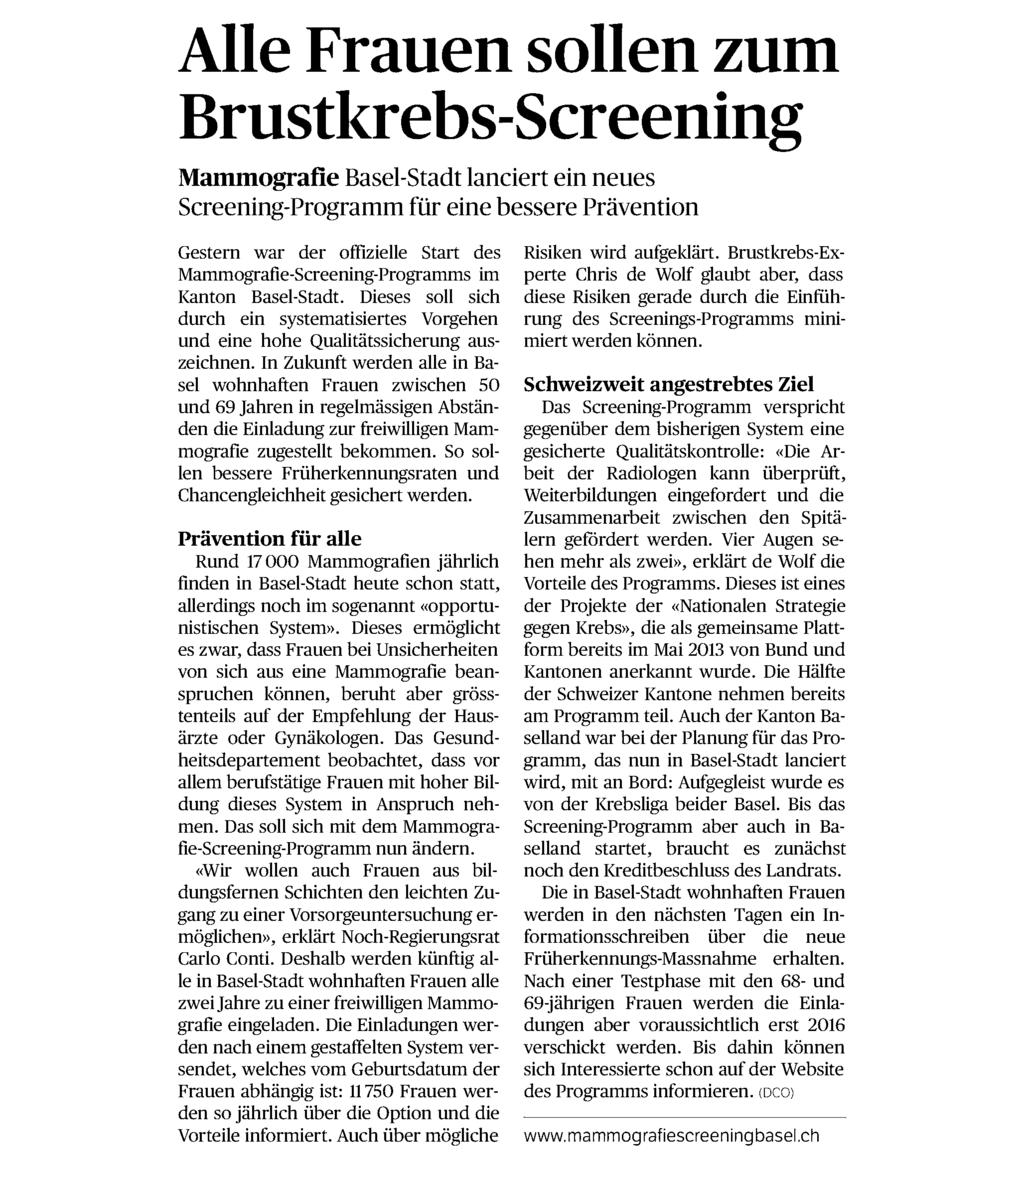 des Mammografie-Screening-Programms im Kanton Basel-Stadt. Dieses soll sich durch ein systematisiertes Vorgehen und eine hohe Qualitätssicherung auszeichnen.